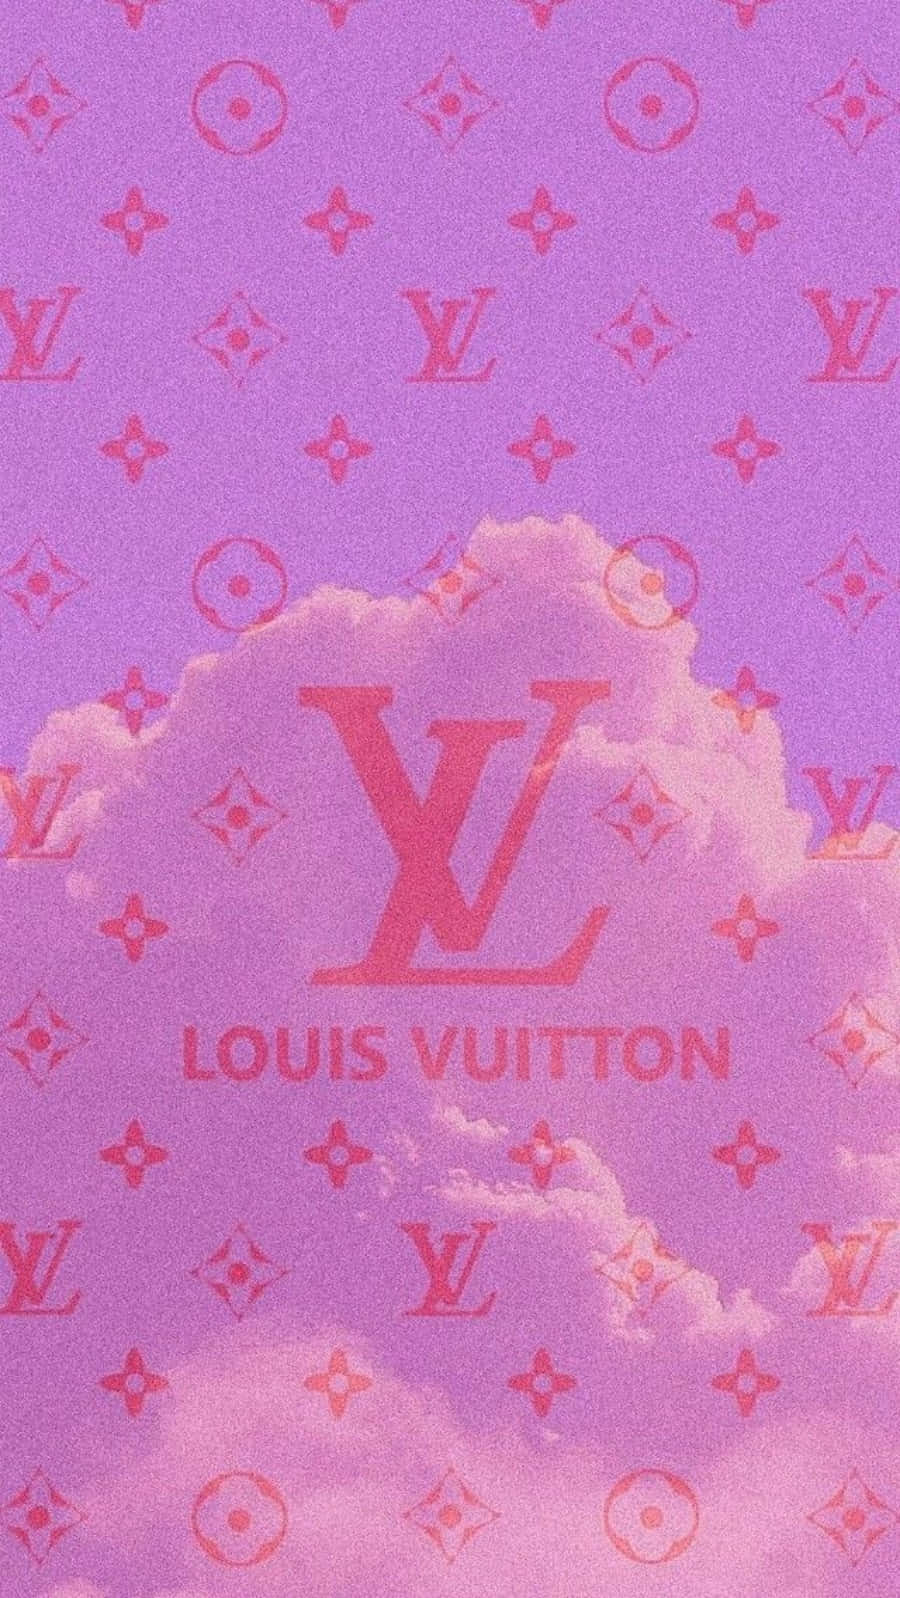 40 Louis Vuitton Collage Wallpapers  WallpaperSafari